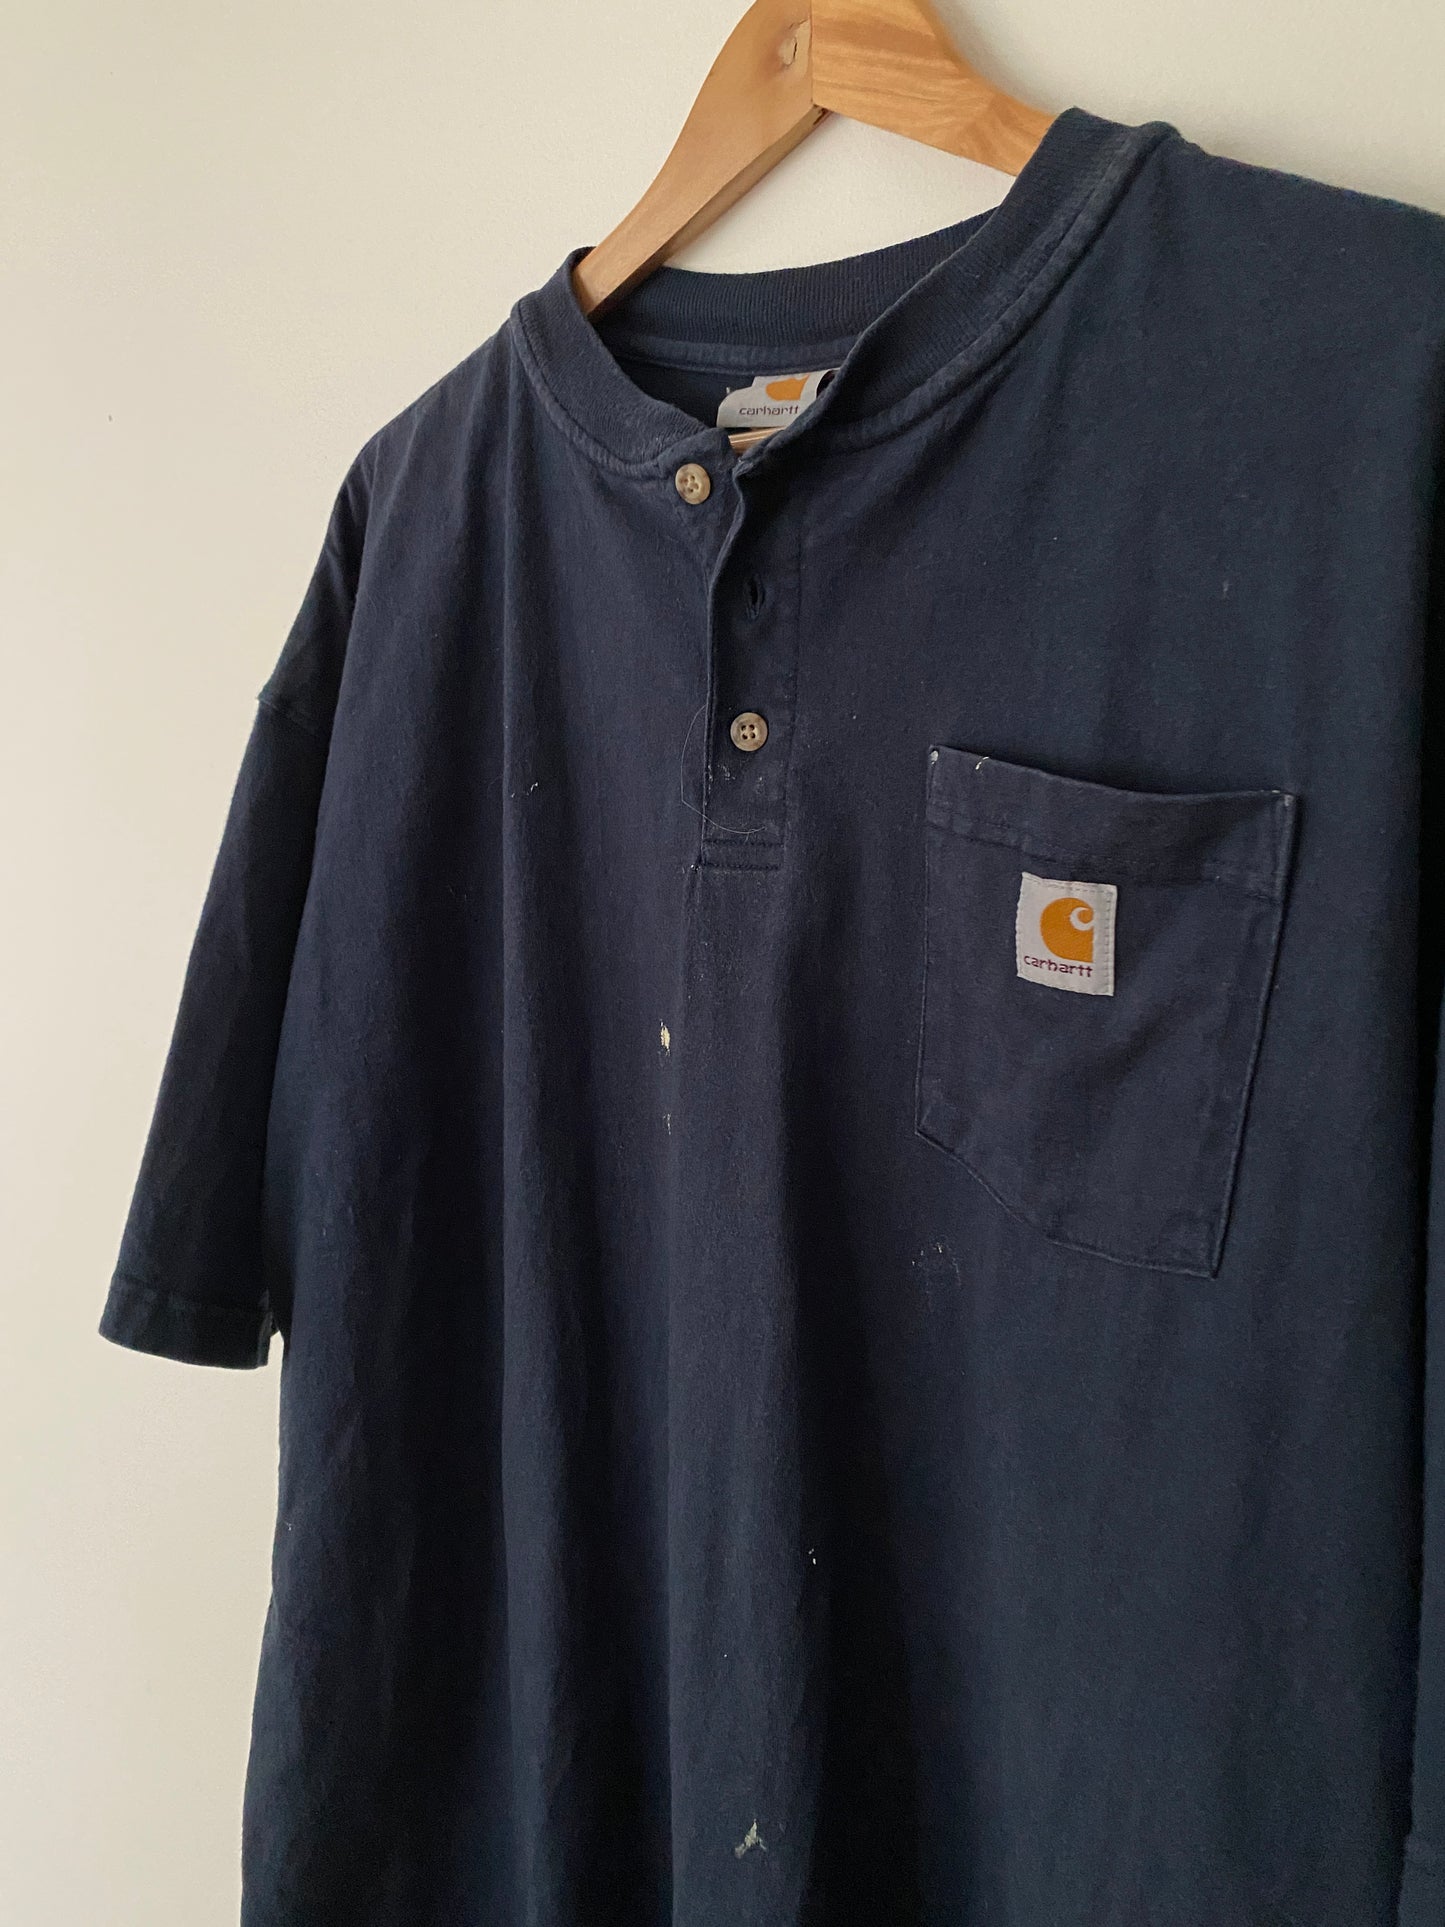 Carhartt Pocket Henley T-Shirt - XL